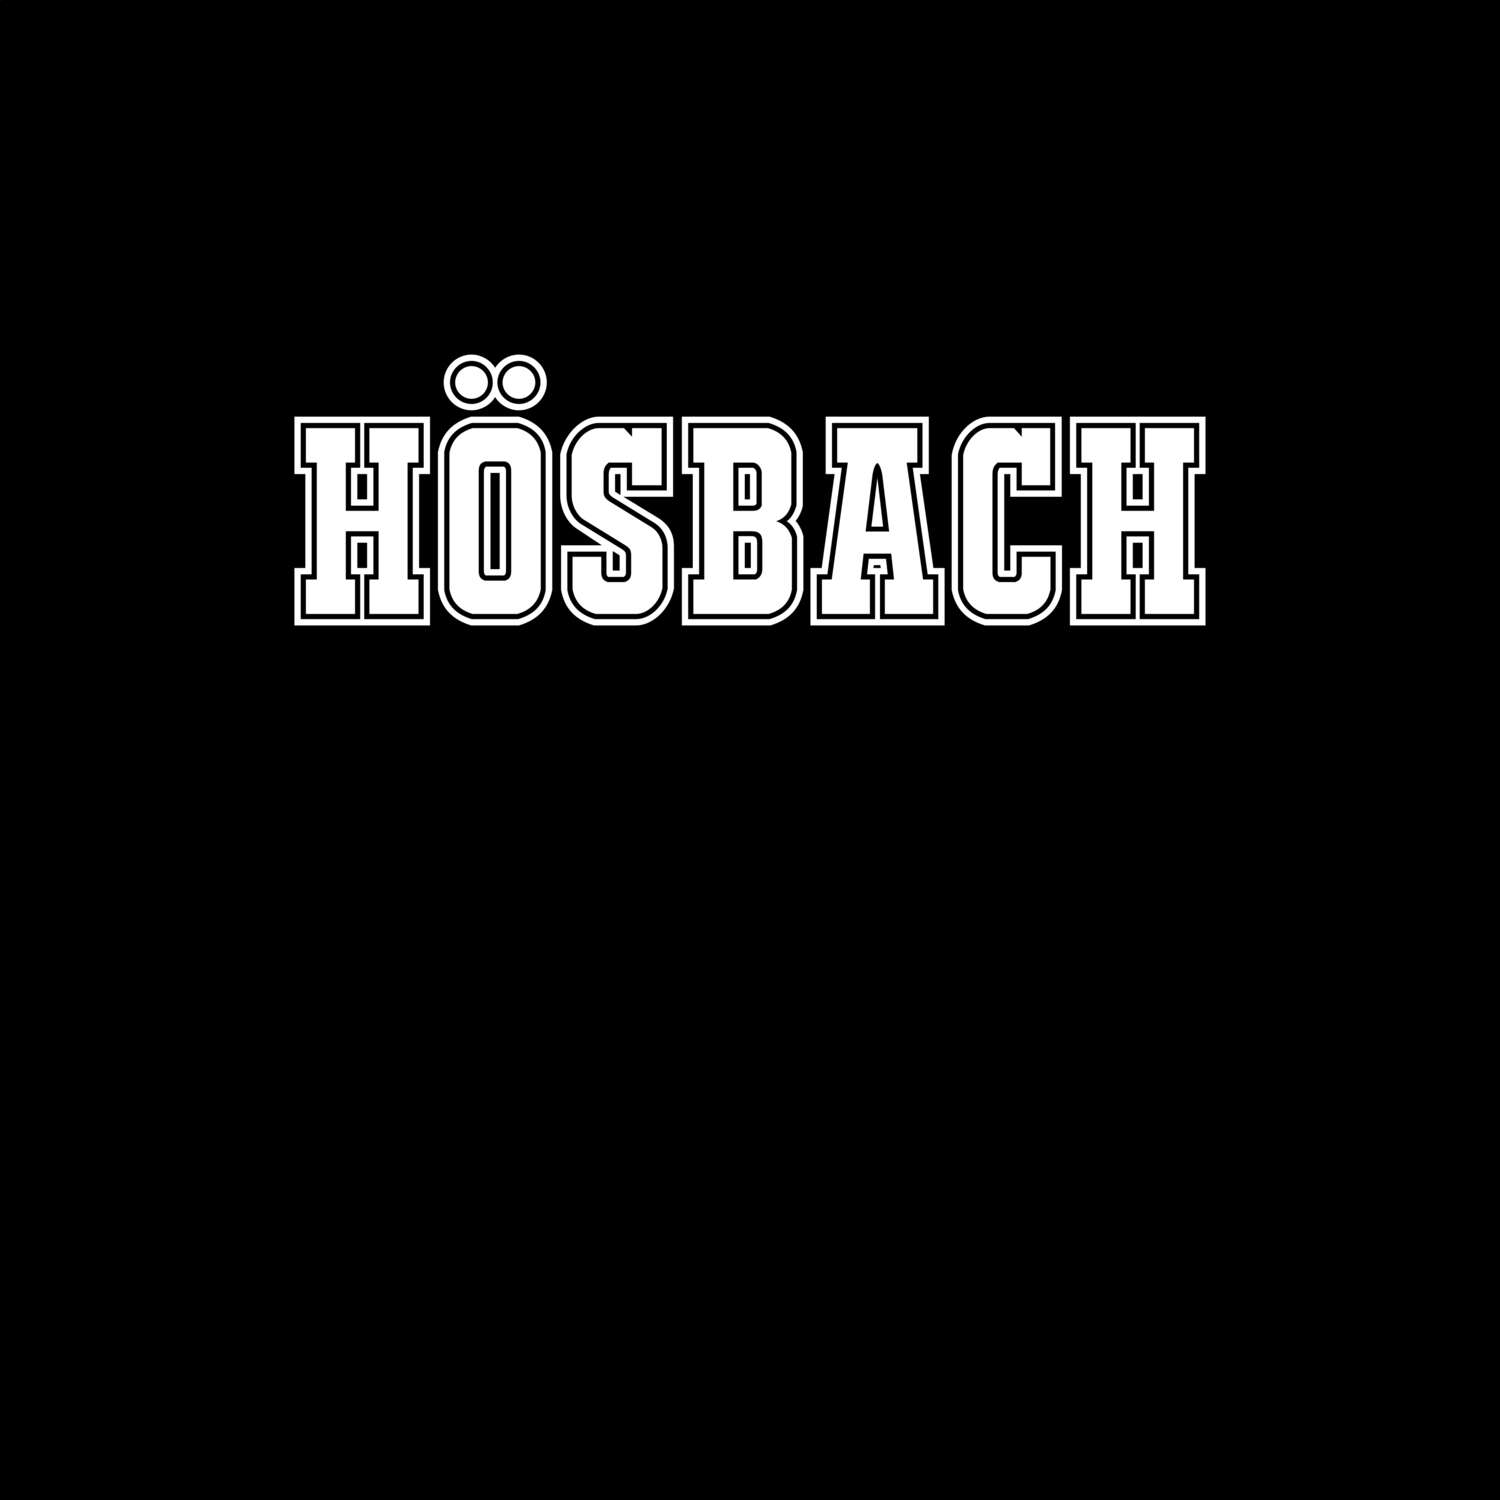 Hösbach T-Shirt »Classic«